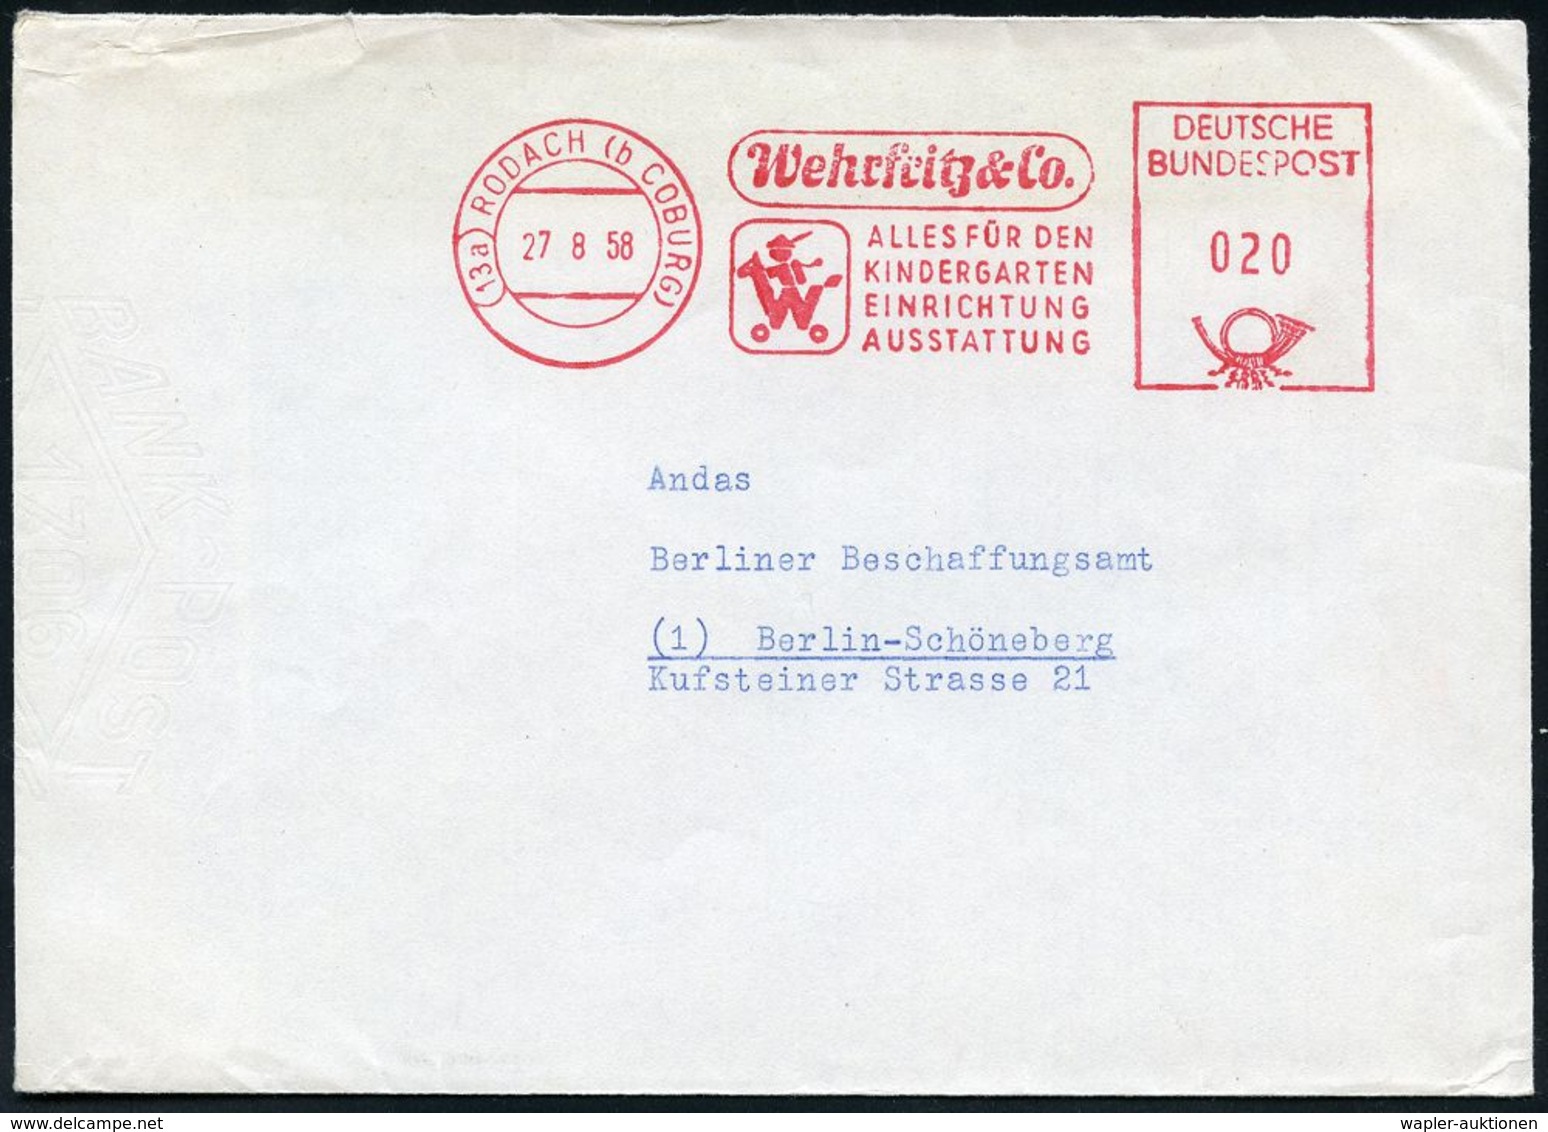 SPIELZEUG / SPIELZEUGMESSEN : (13a) RODACH (b COBURG)/ Wehrfrotz & Co/ ALLES FÜR DEN/ KINDERGARTEN.. 1958 (27.8.) Dekora - Non Classés